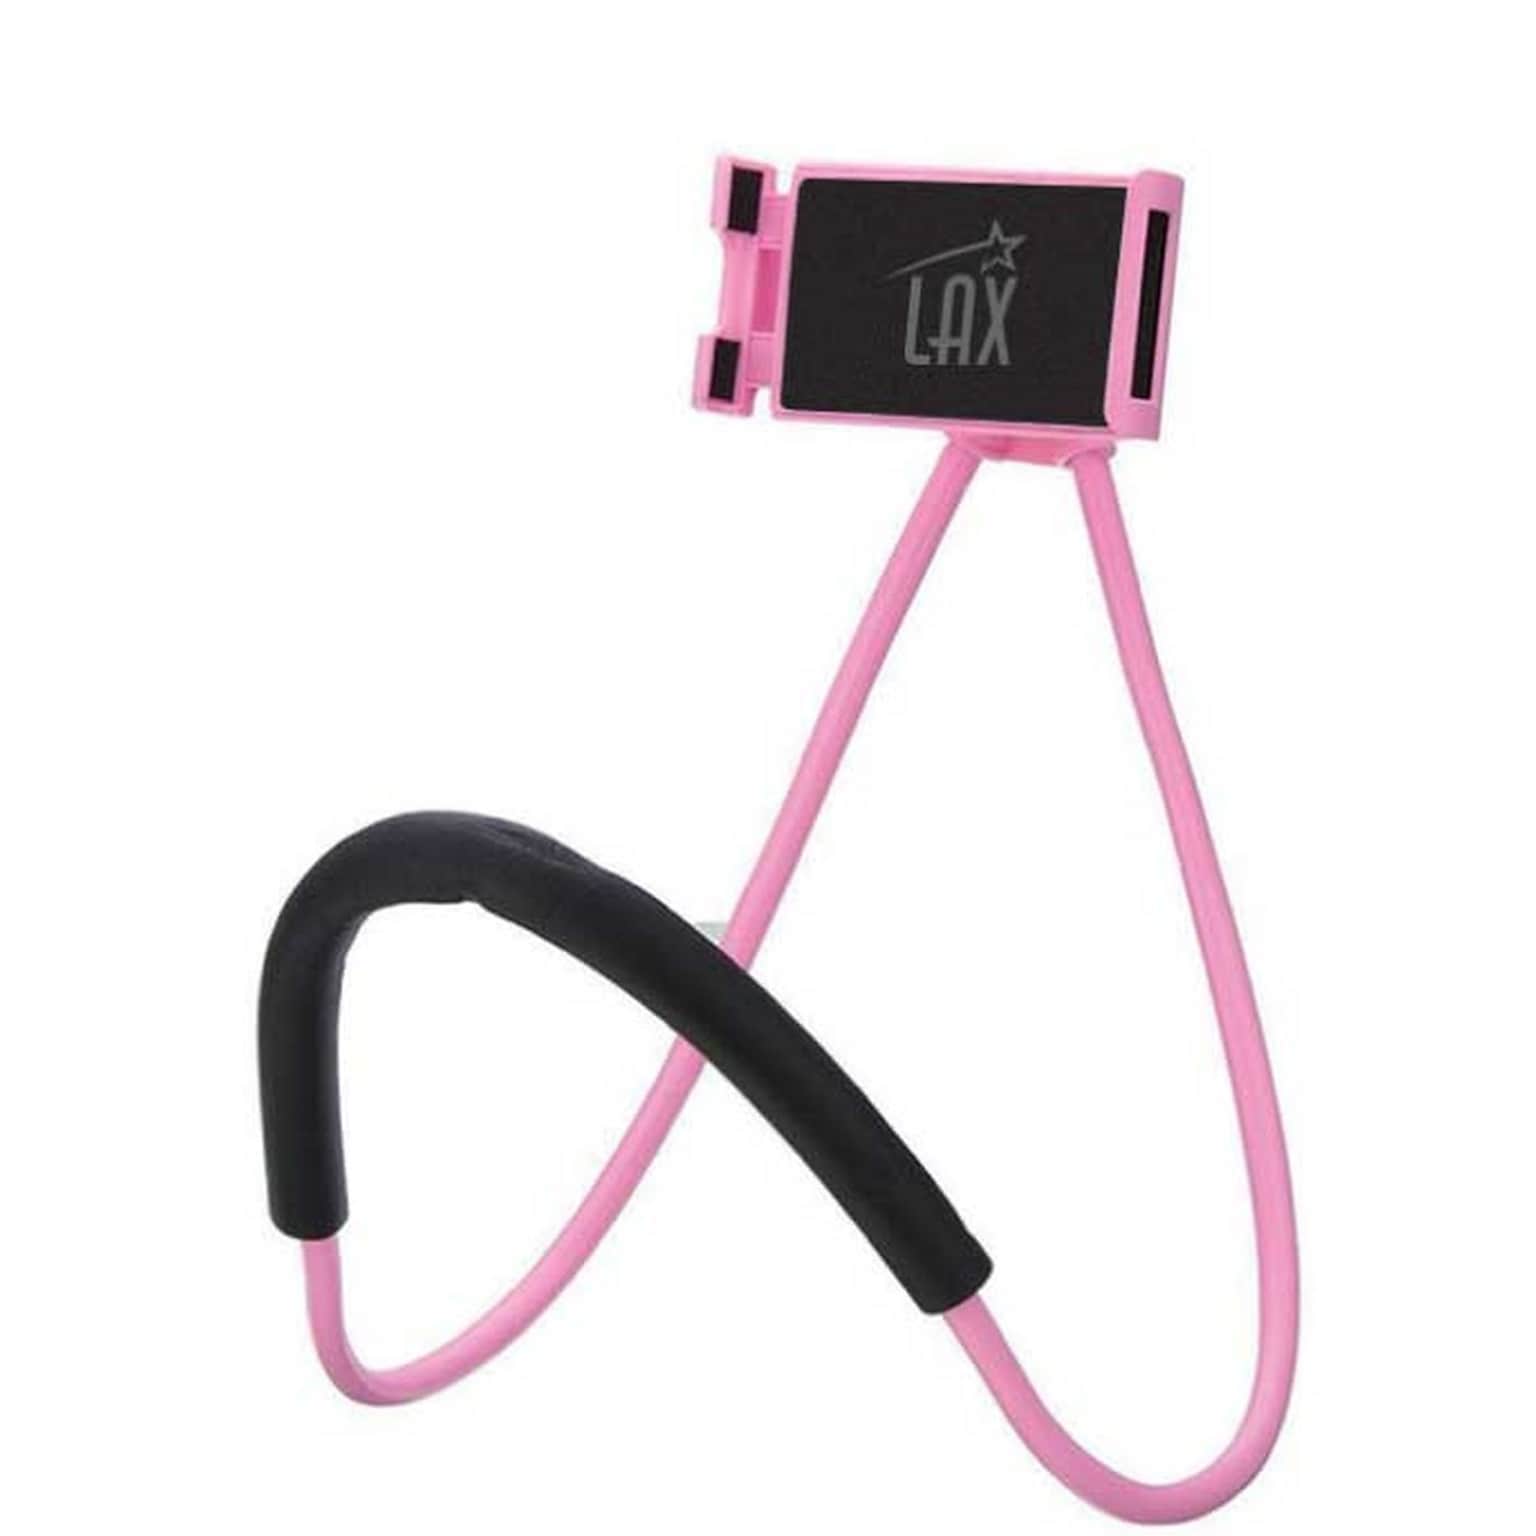 LAX Gadgets Hands-Free Neck Holder Phone Mount for Smartphones, Pink (NECKHLDR-PNK)